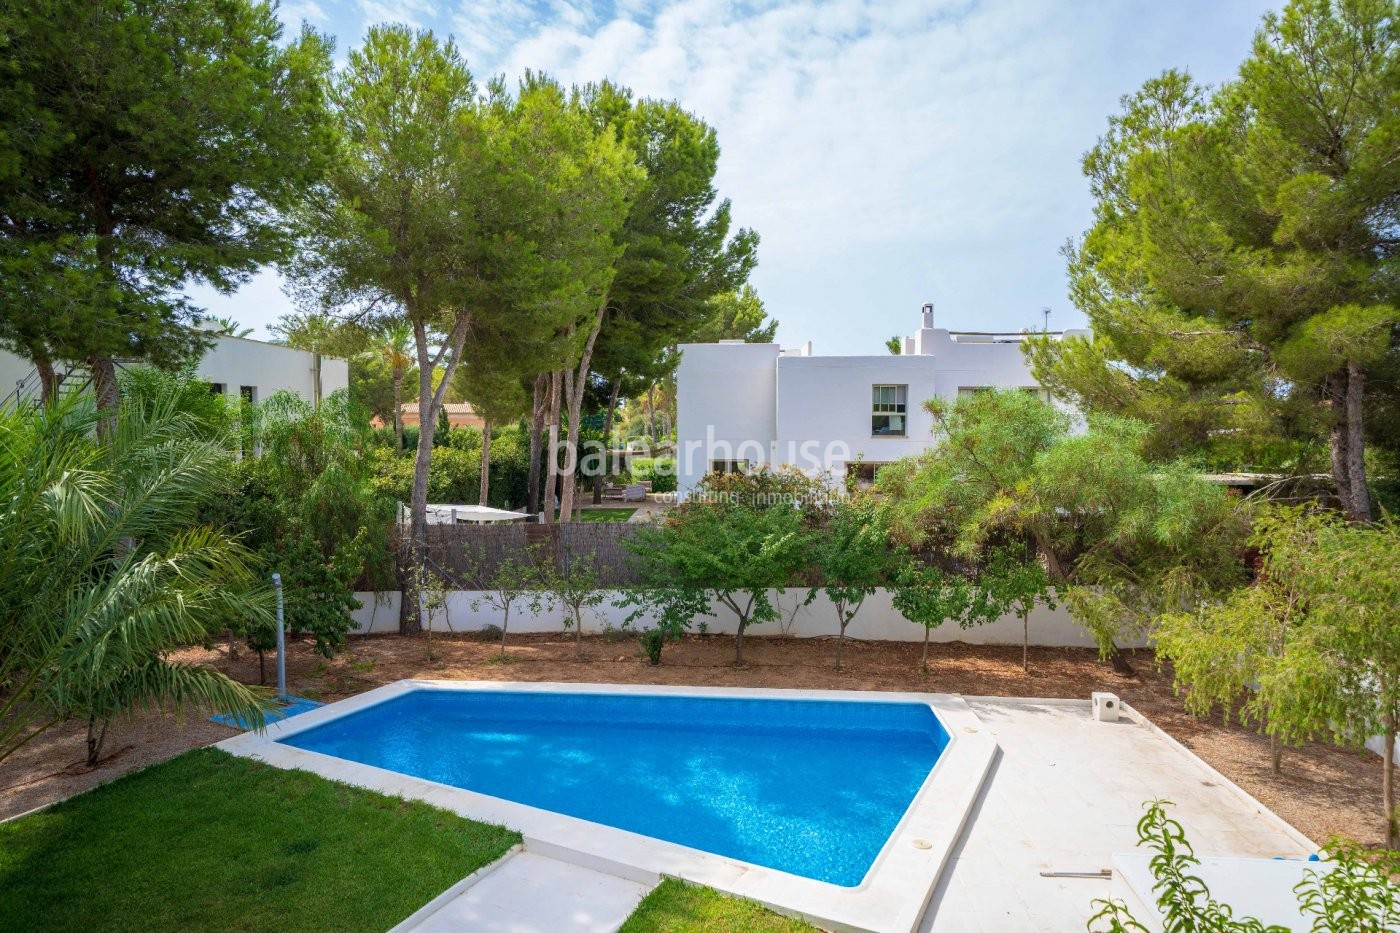 Encantador chalet mediterráneo desde donde ver el mar con piscina, terrazas y jardín